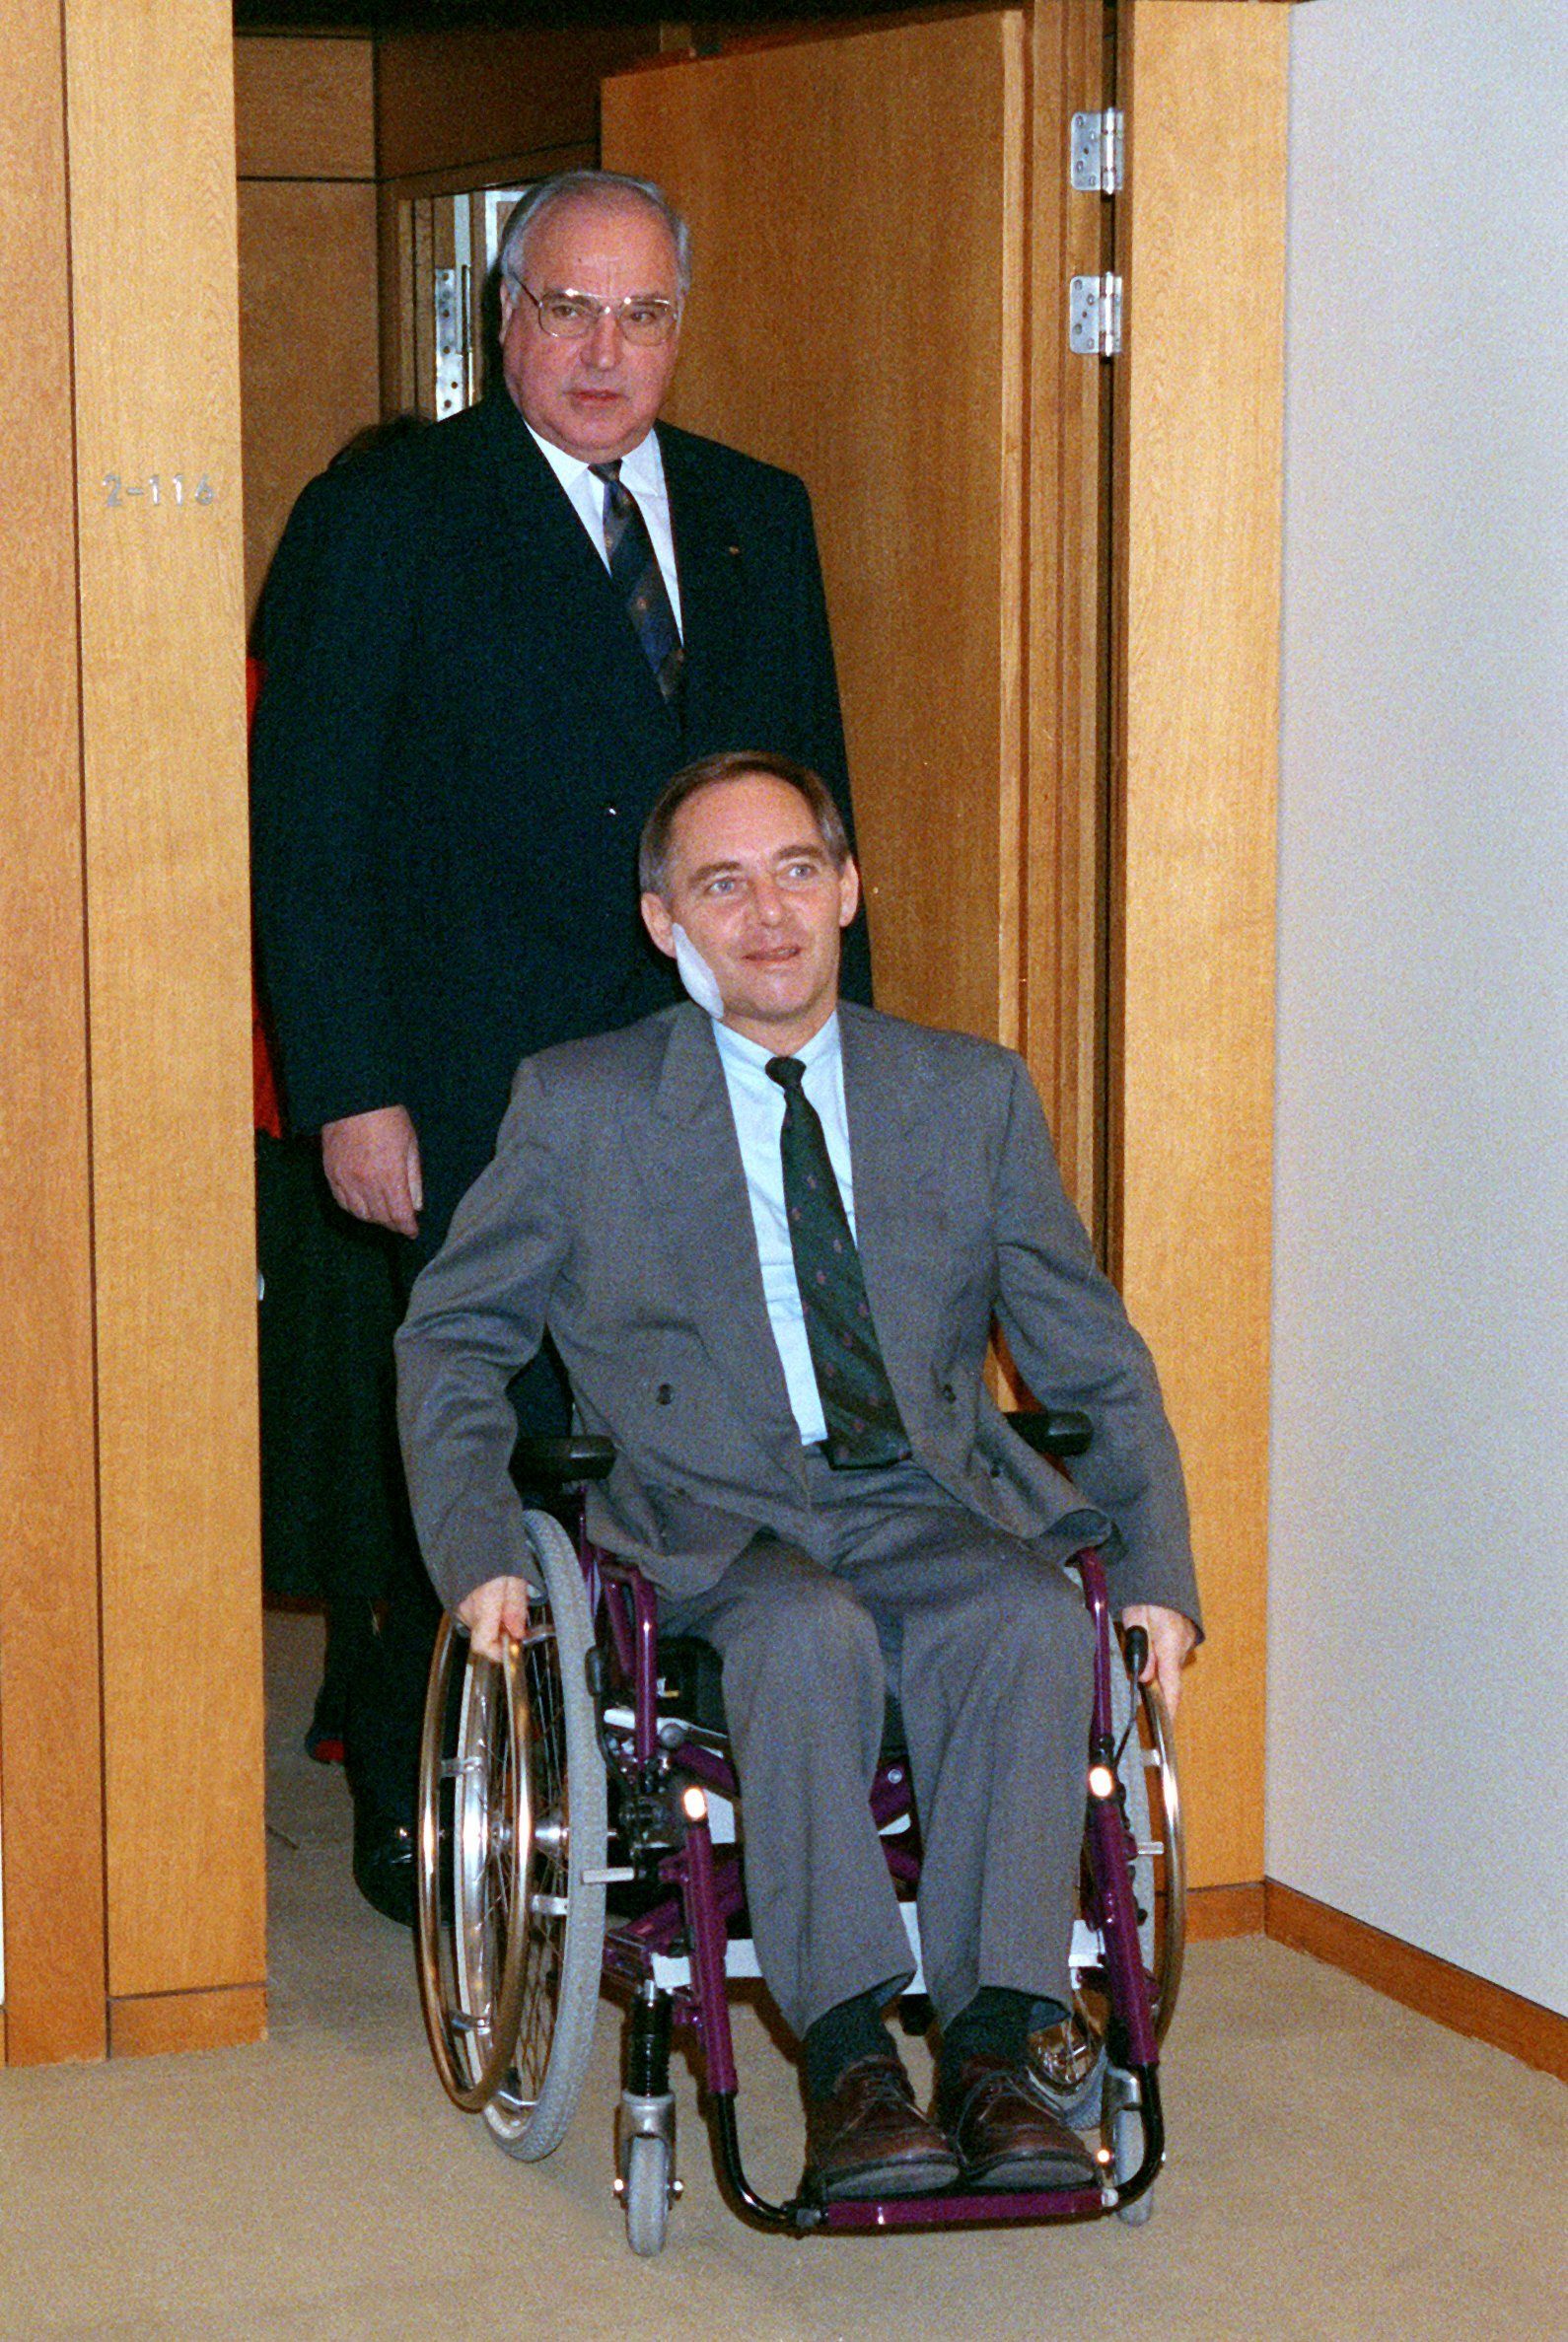 28. November 1990: Gefolgt von Bundeskanzler Helmut Kohl ist der damalige Innenminister Wolfgang Schäuble auf dem&nbsp; Weg zu seiner ersten Kabinettssitzung in Bonn nach dem Attentat.